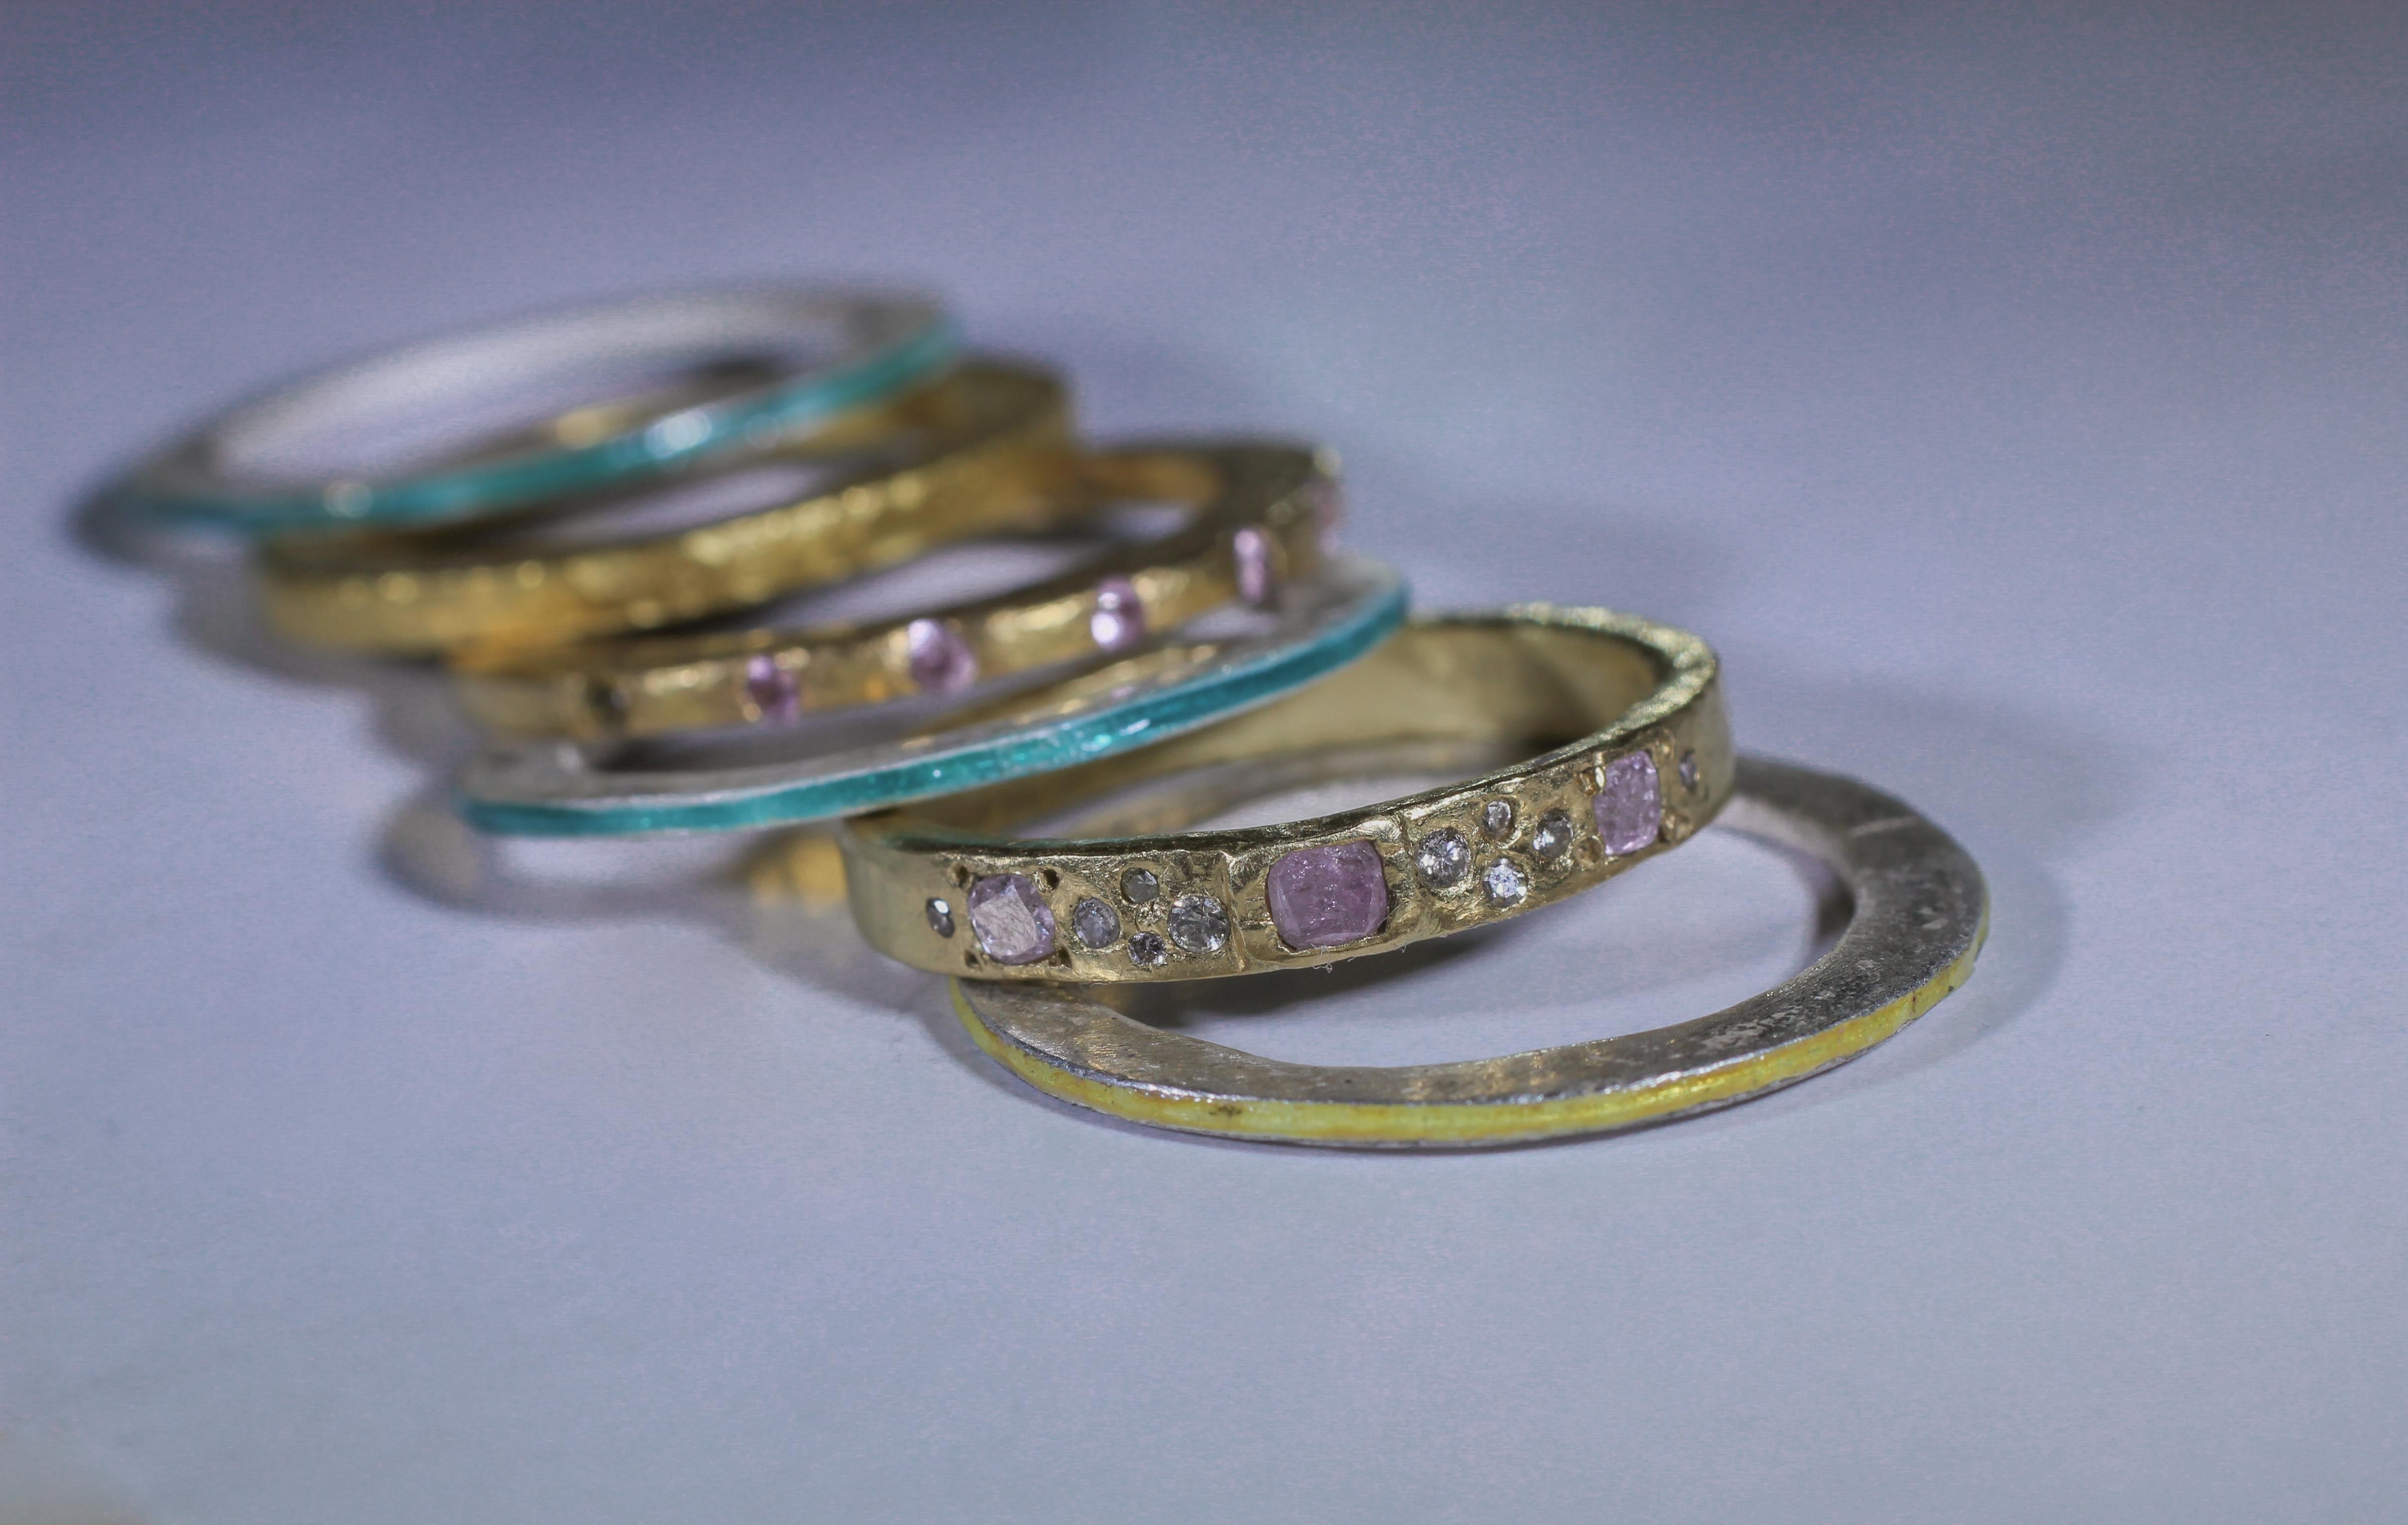 18K, 22K recyceltes Gold und Feinsilber Hochzeit oder Mode-Ring mit dancy Farbe rosa Diamanten, Saphire in diesem modernen Kunst-Design eingefügt.

Dieser lebhafte Stapel von 6 Mode- oder Trauringen kombiniert unseren Lattice-Ring aus 18 Karat Gold,